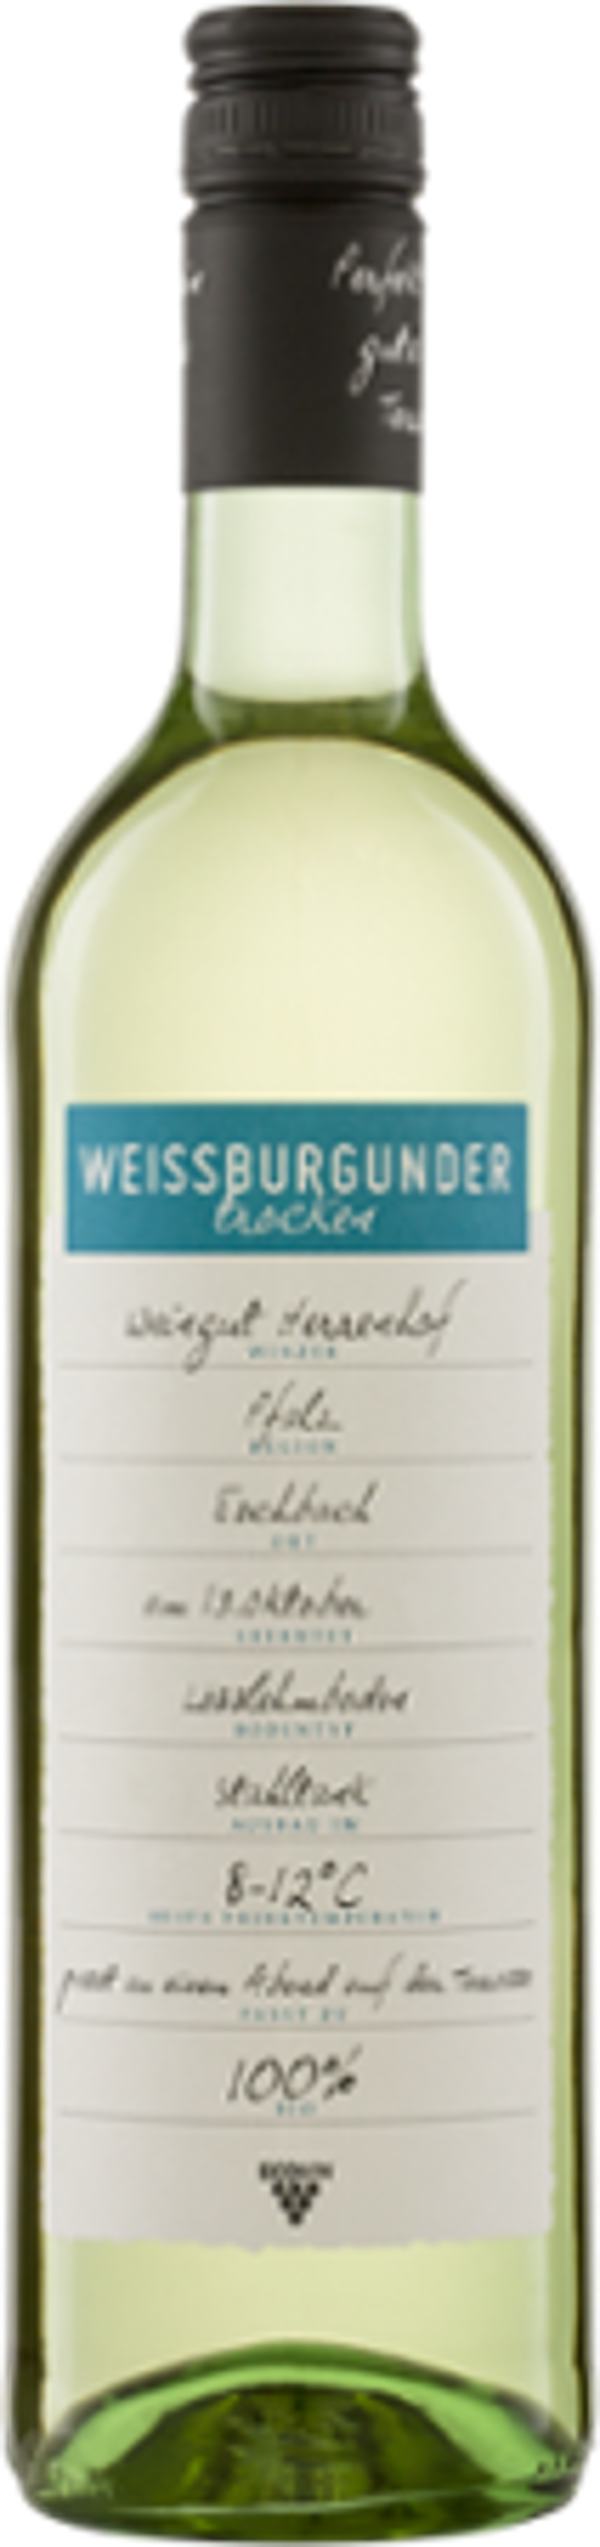 Produktfoto zu Weißburgunder QW Pfalz ECOVIN Weingut Herrenhof